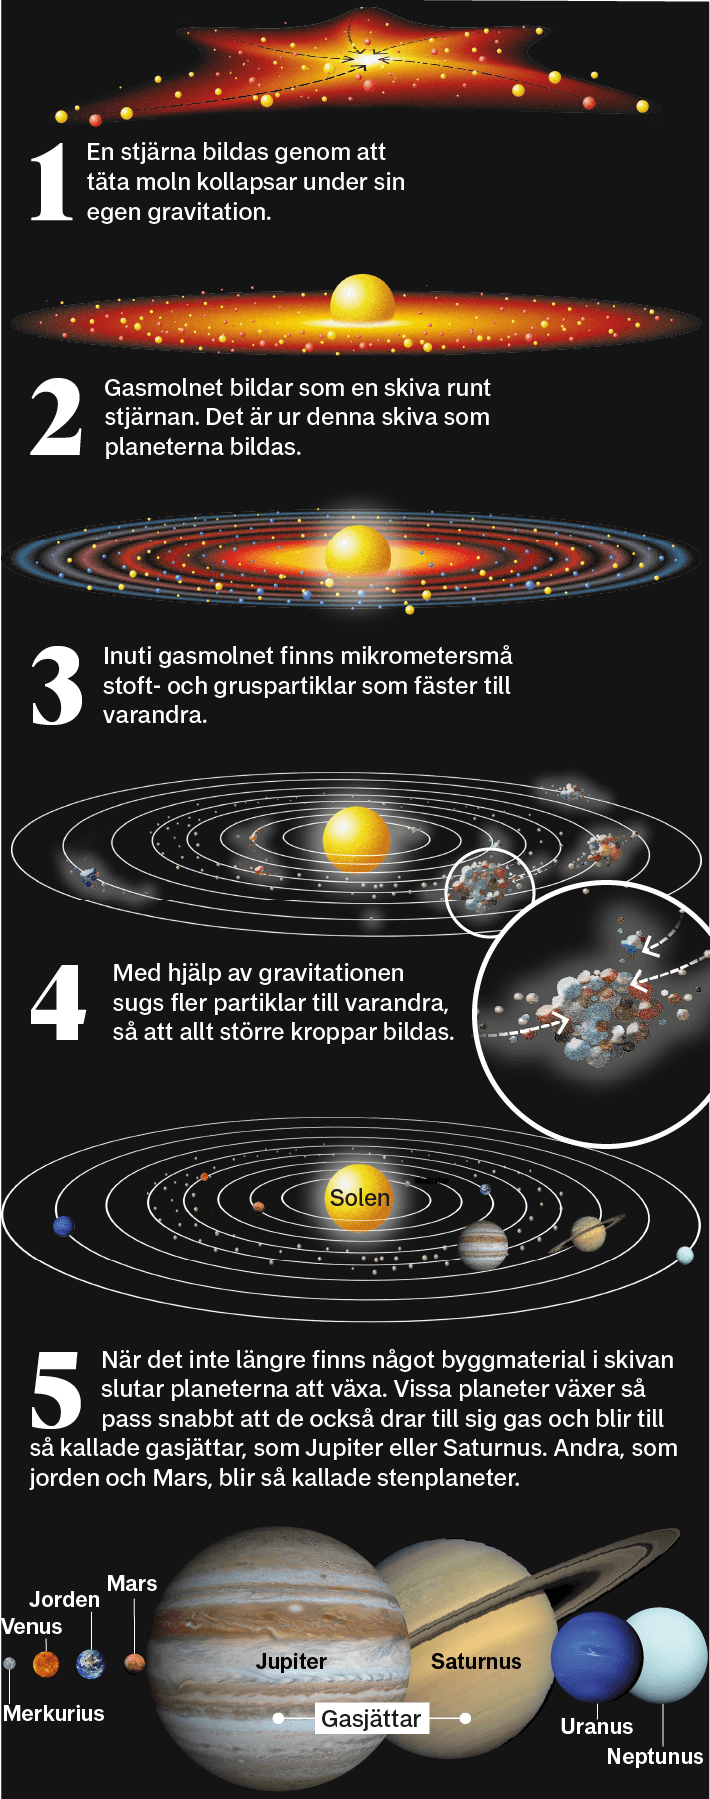 Ecco come si forma il sistema solare